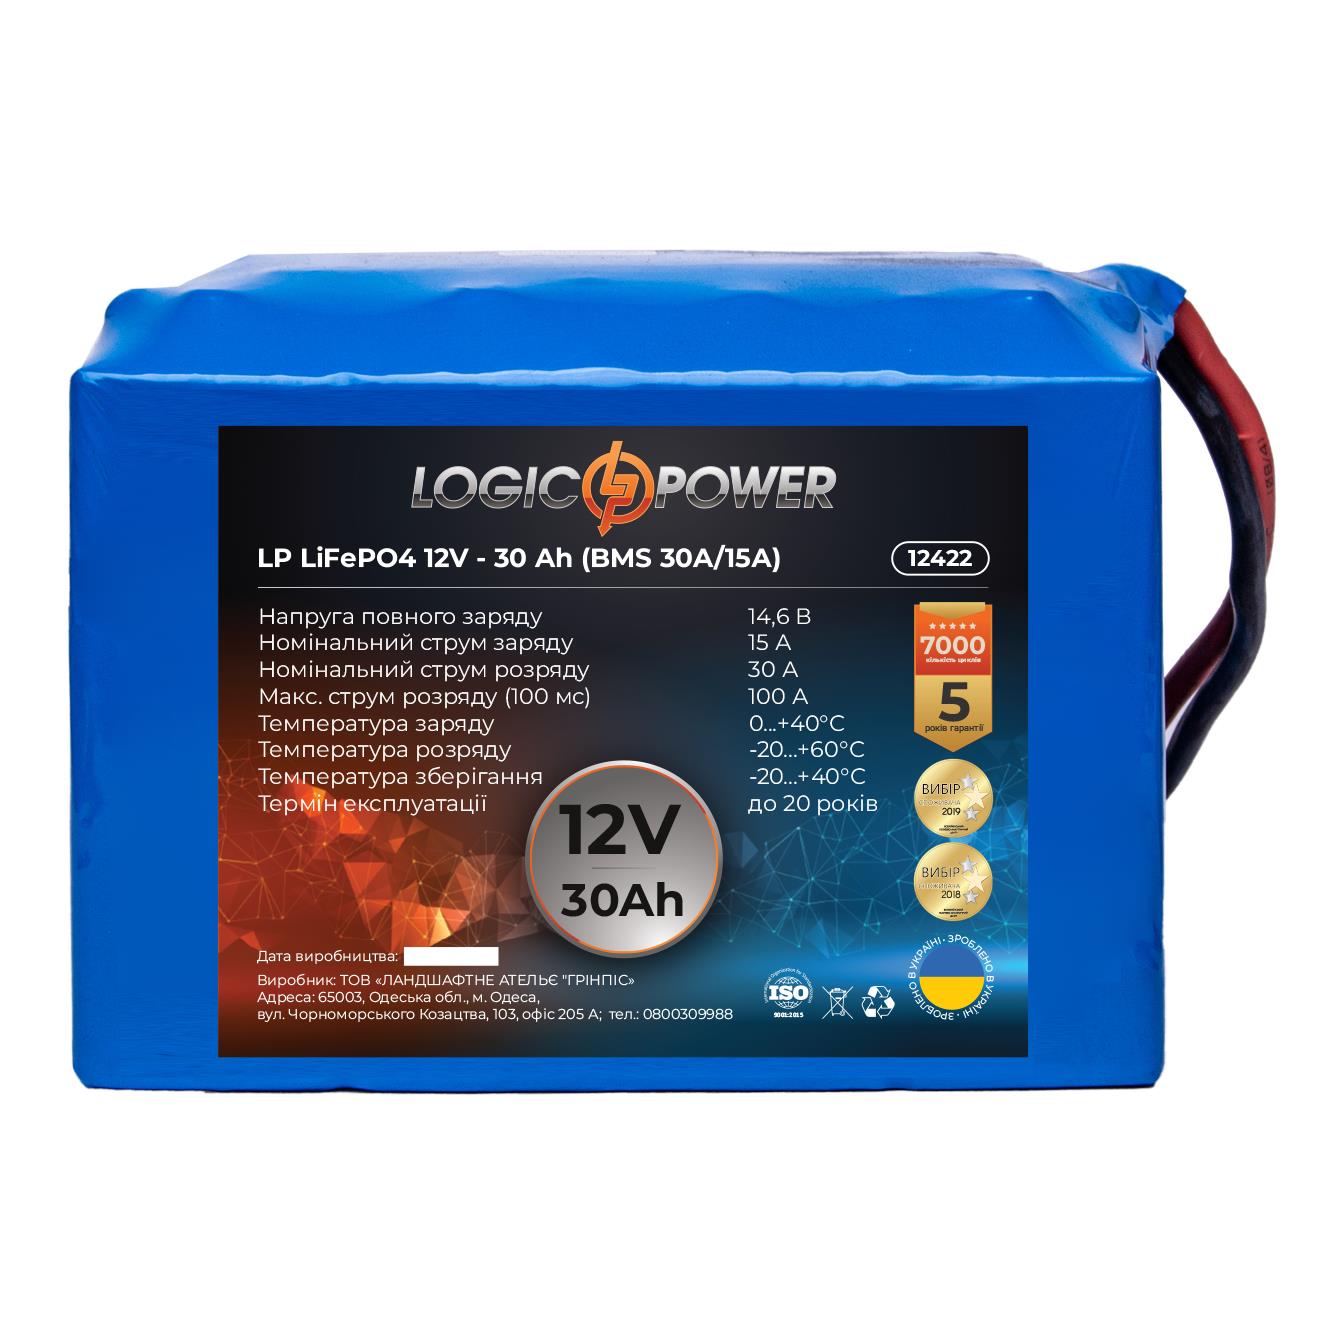 Характеристики акумулятор літій-залізо-фосфатний LogicPower LP LiFePO4 12V - 30 Ah (BMS 30A/15А) (12422)